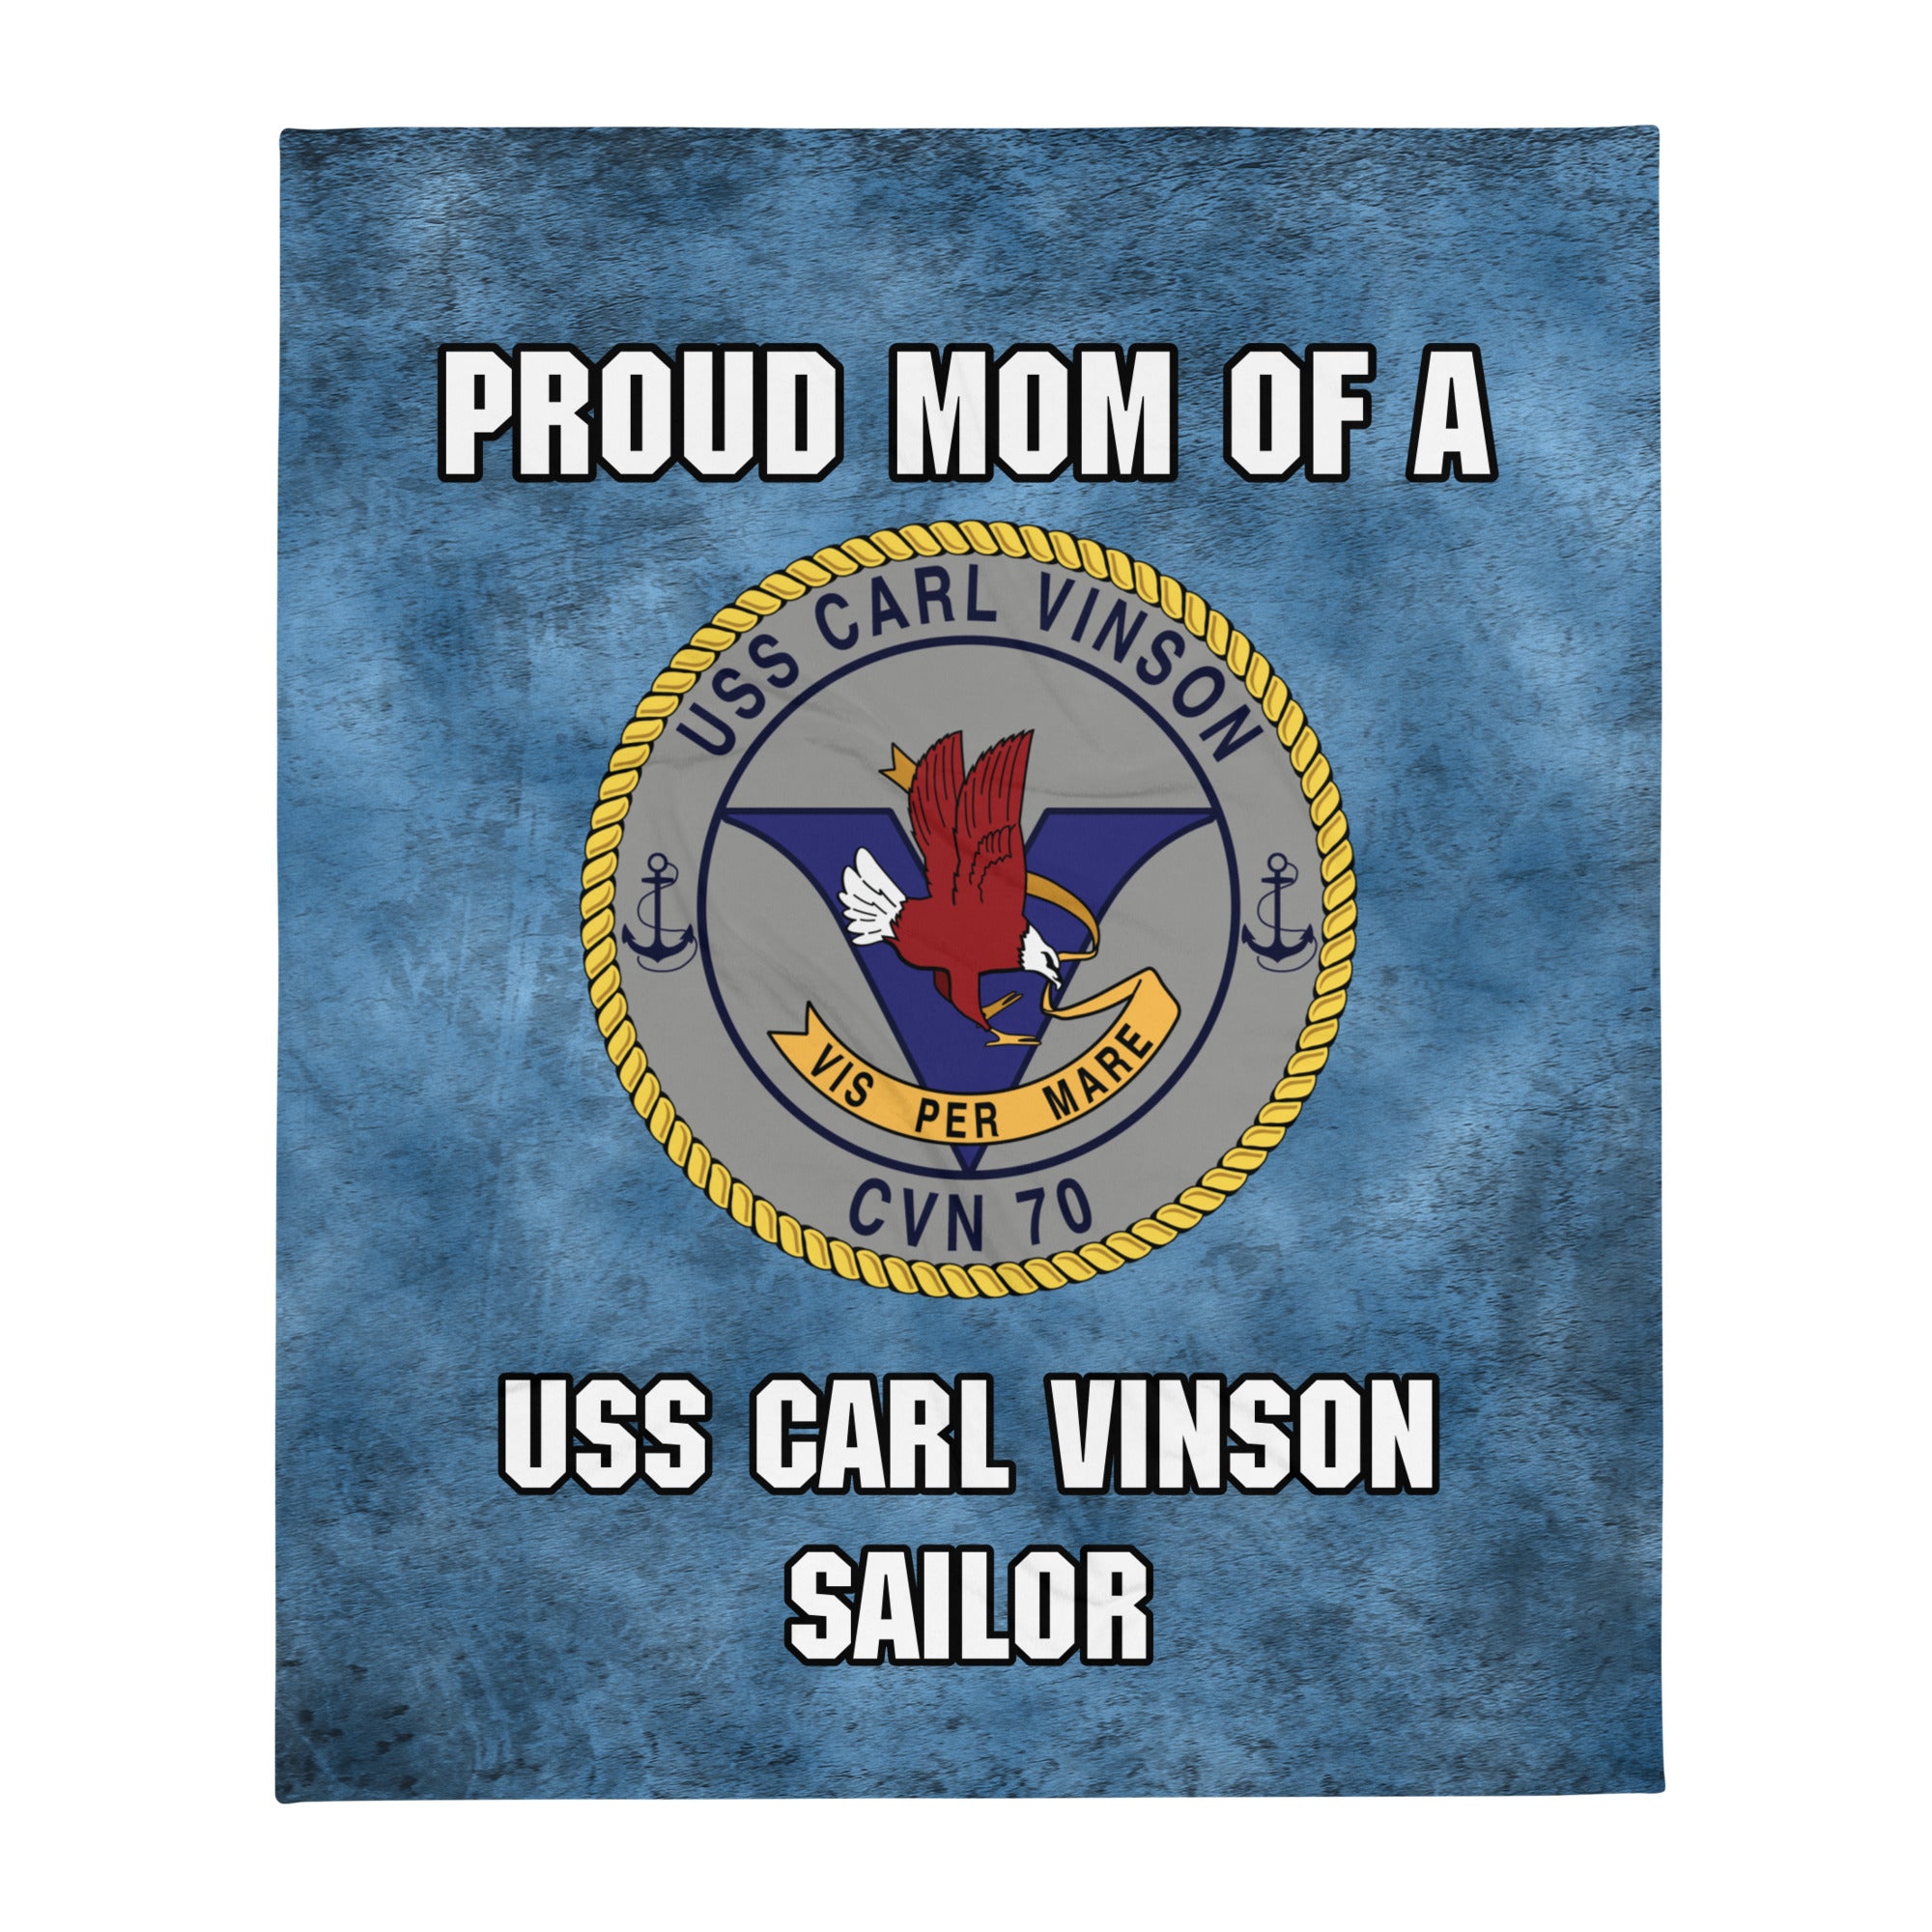 USS CARL VINSON Proud Mom Throw Blanket